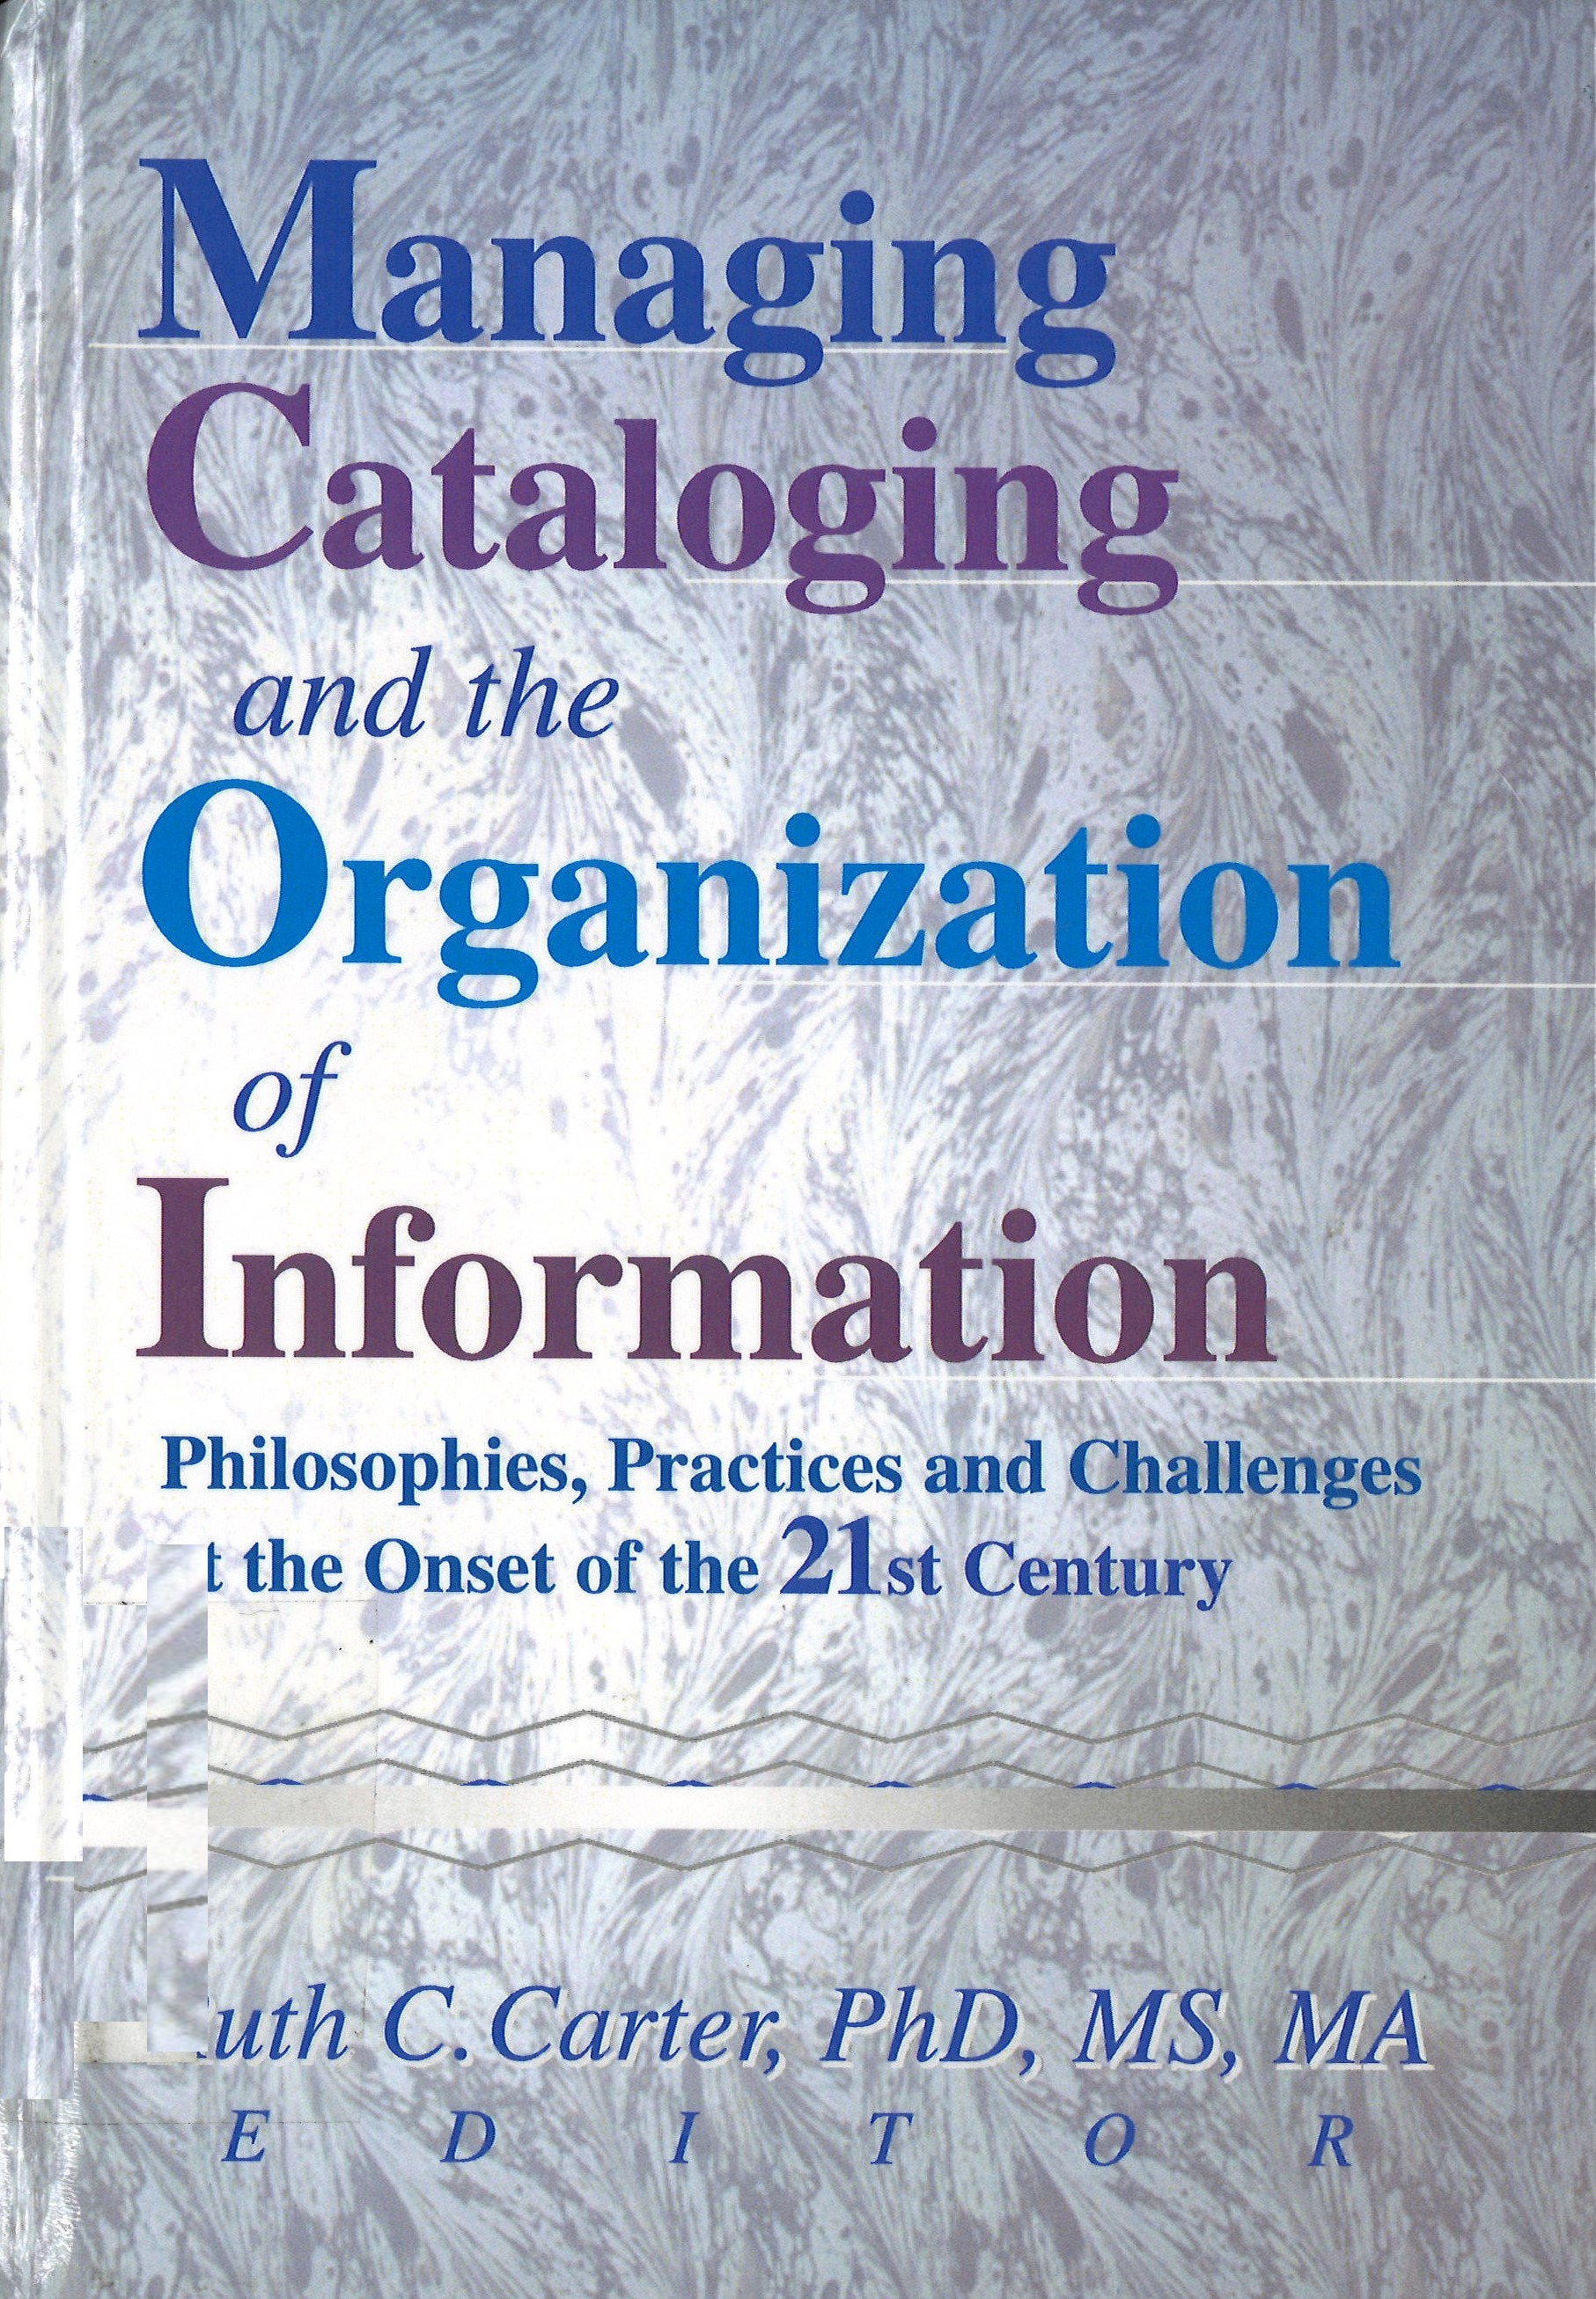 Imagen de portada del libro Managing cataloging and the organization of information